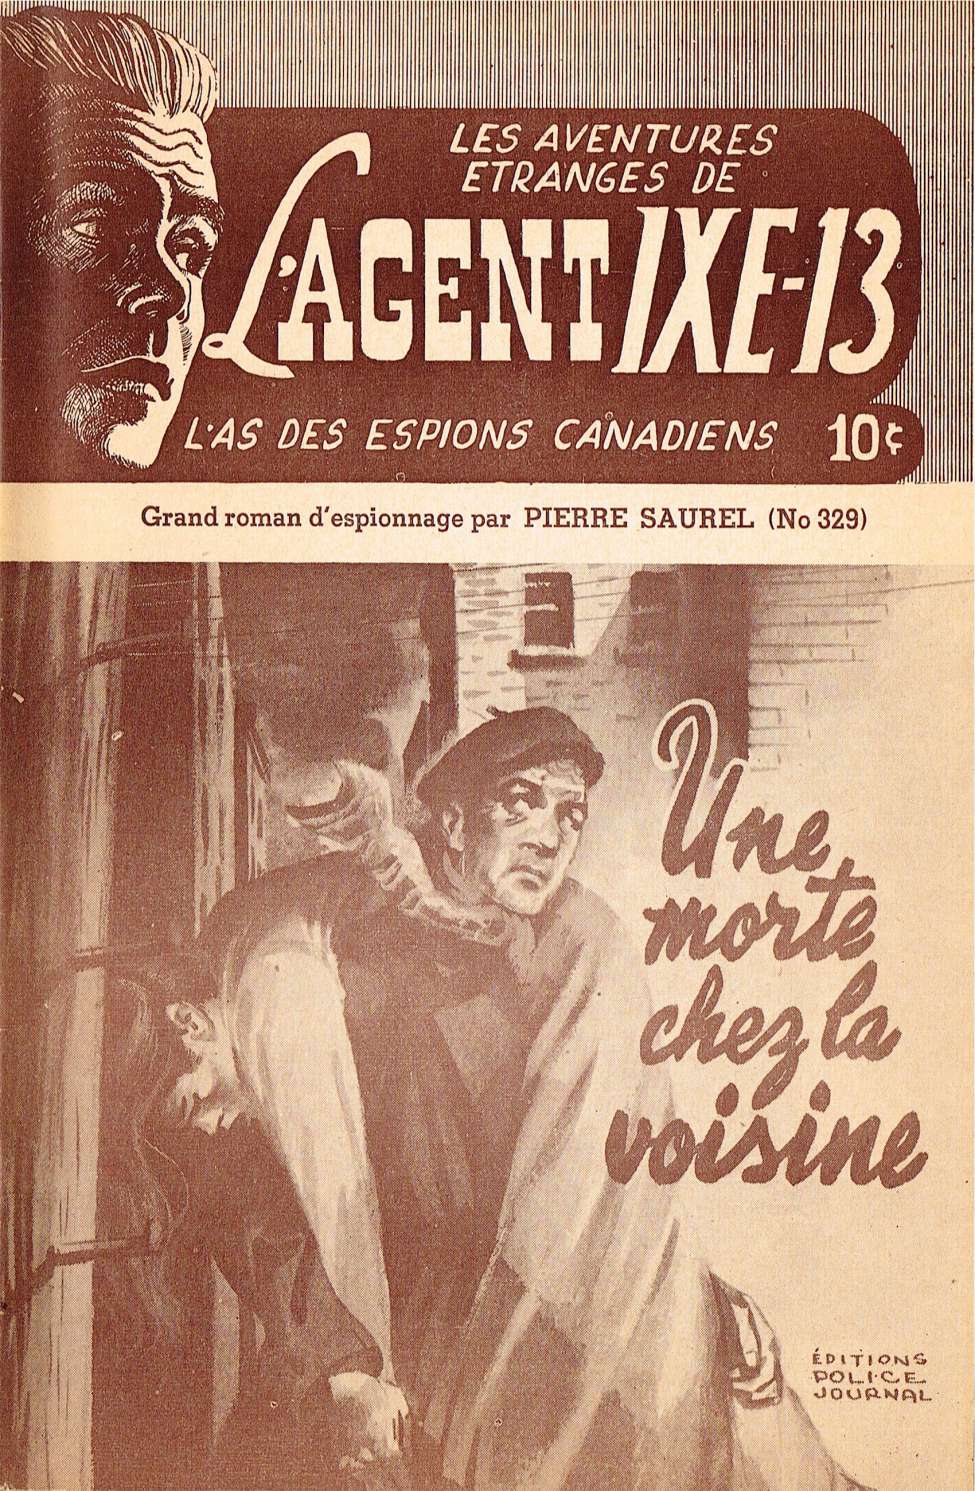 Book Cover For L'Agent IXE-13 v2 329 - Une morte chez la voisine